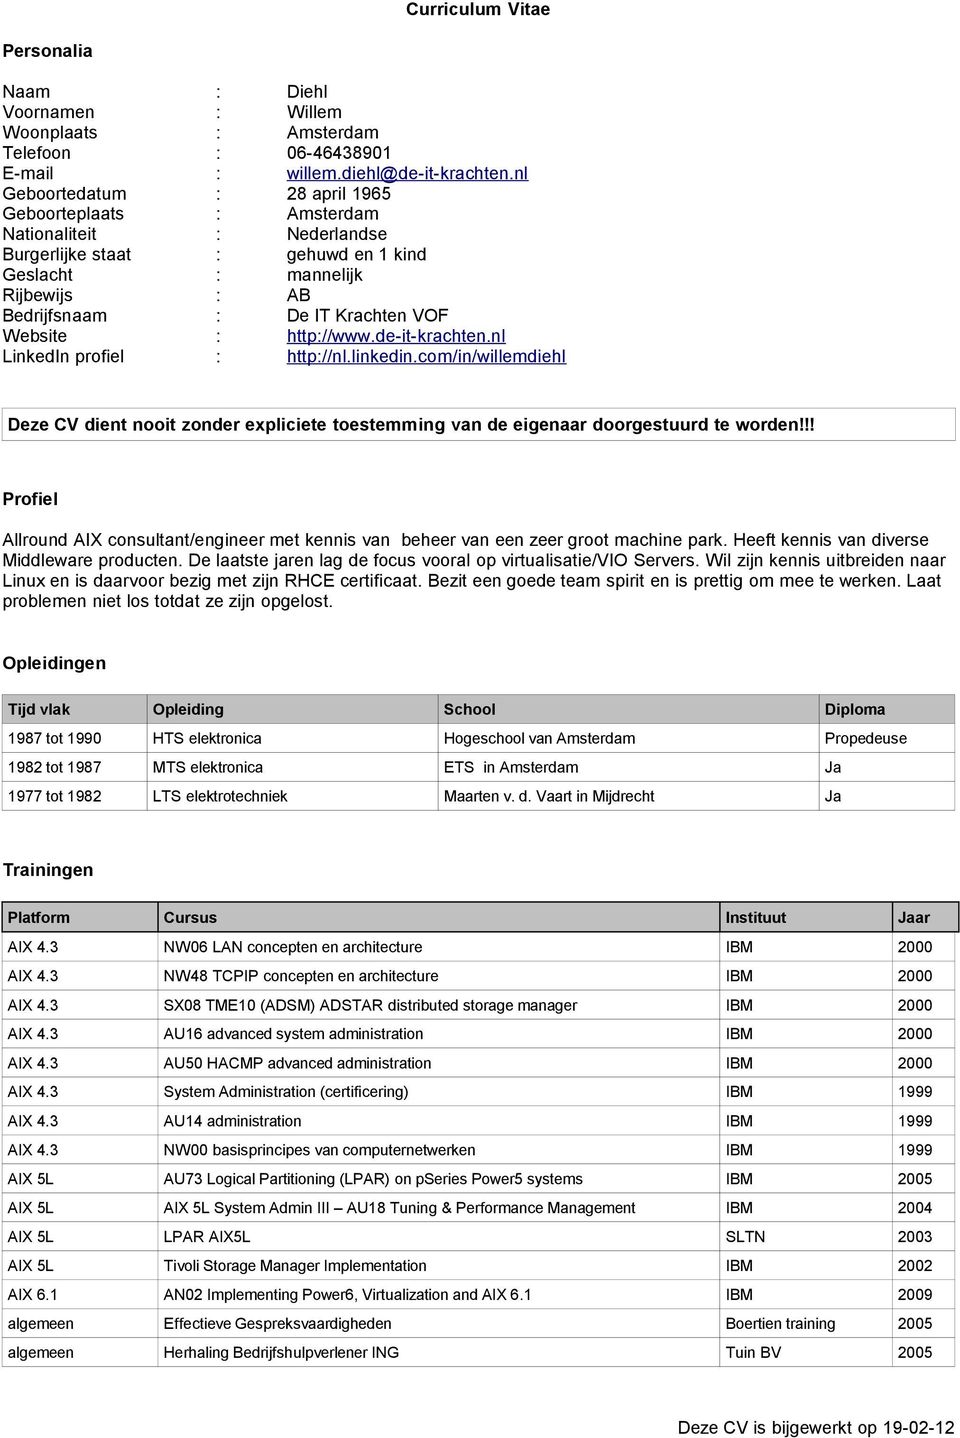 Website : http://www.de-it-krachten.nl LinkedIn profiel : http://nl.linkedin.com/in/willemdiehl Deze CV dient nooit zonder expliciete toestemming van de eigenaar doorgestuurd te worden!